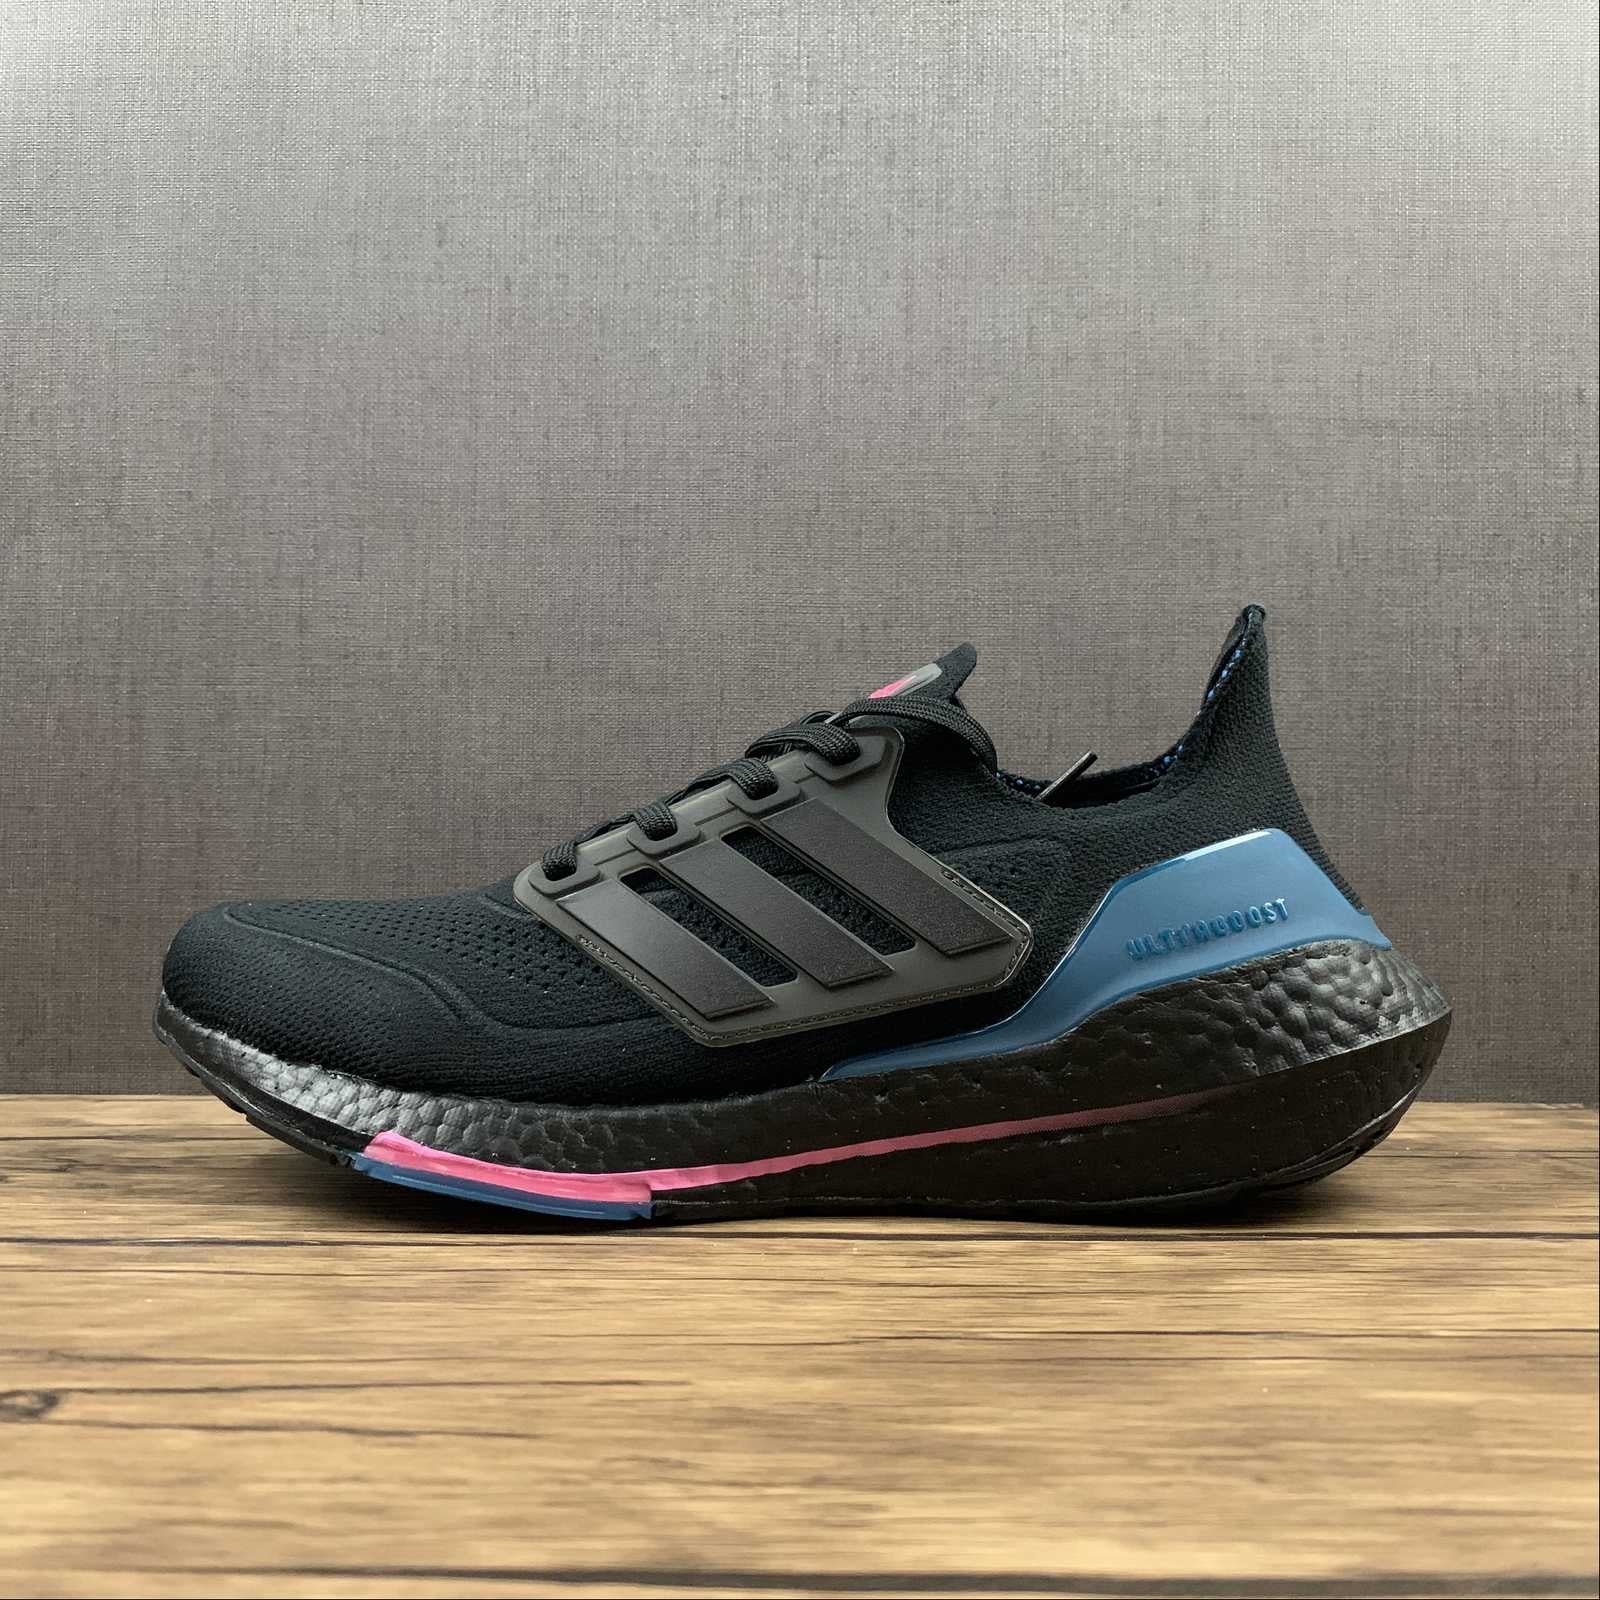 Chaussures Adidas ultraboost noir/bleu/rose